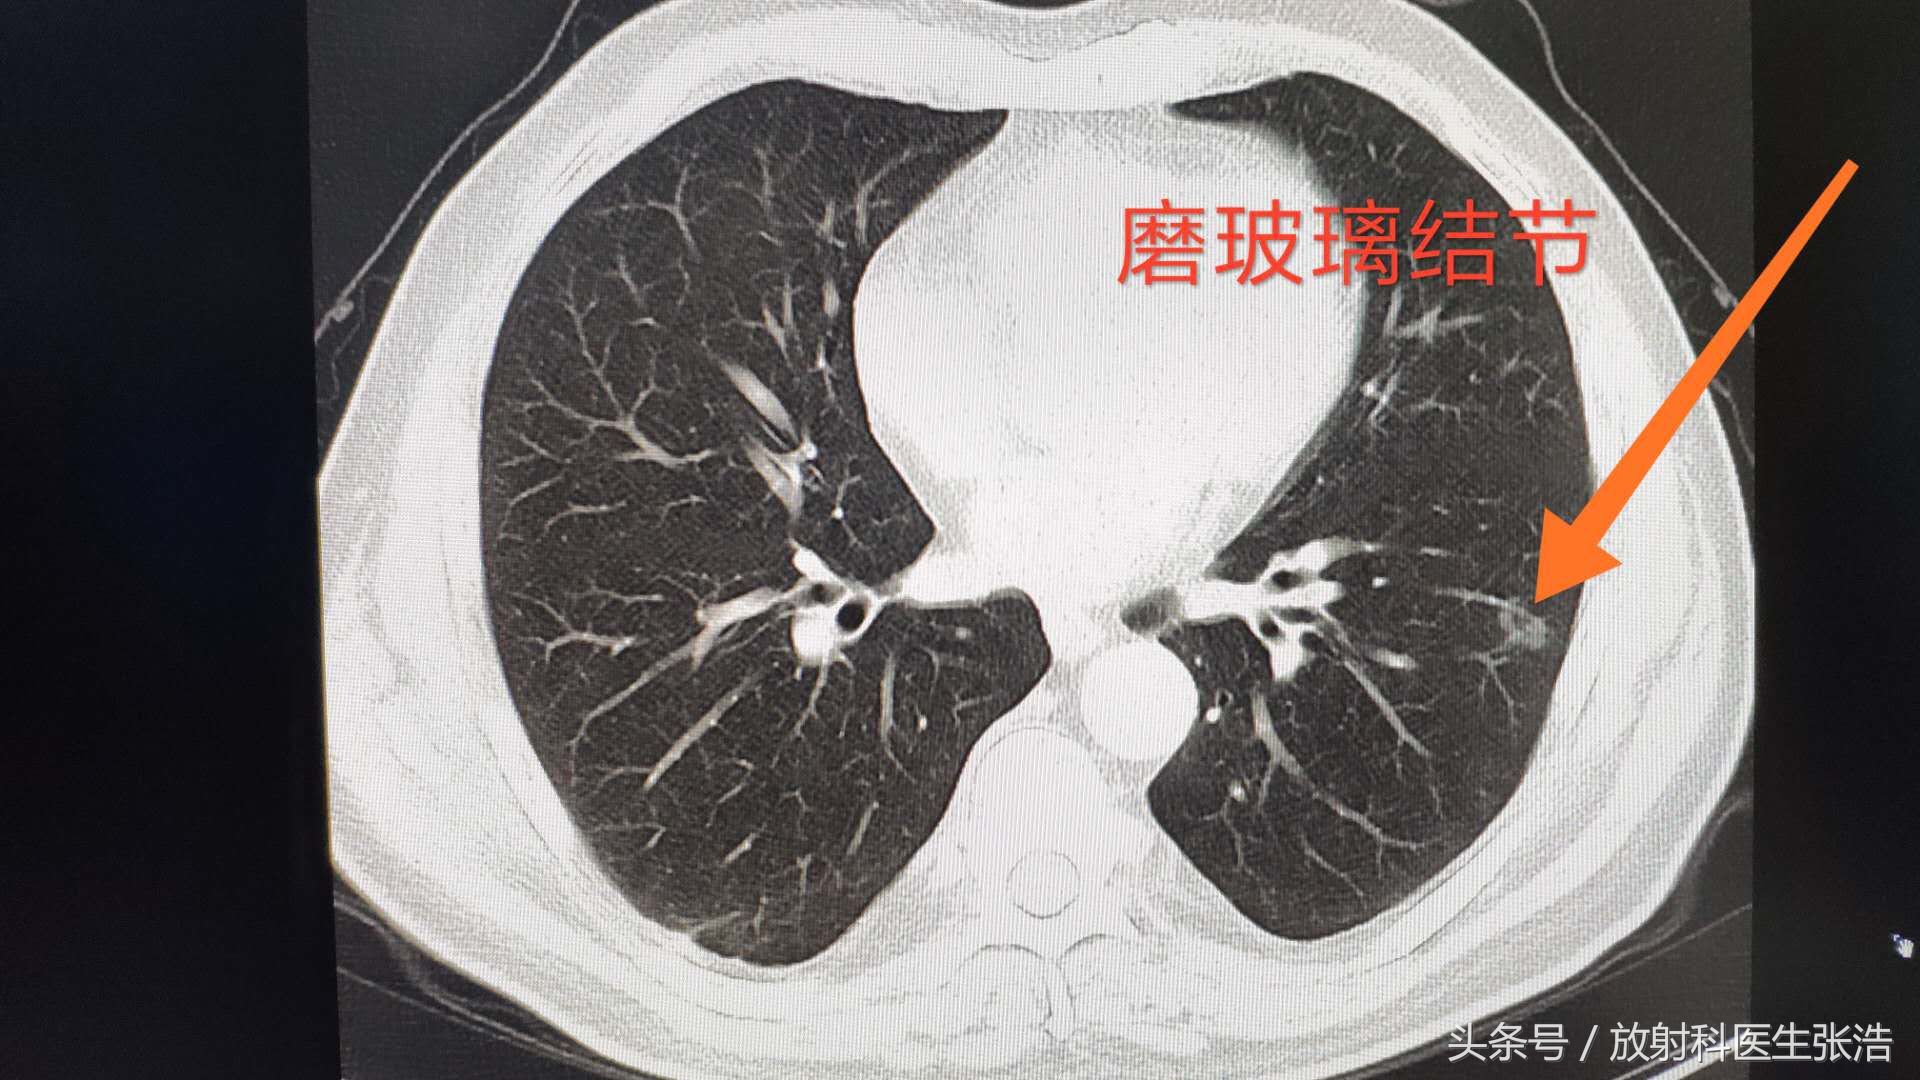 肺部什么样地小结节是早期肺癌,对比良性小结节图